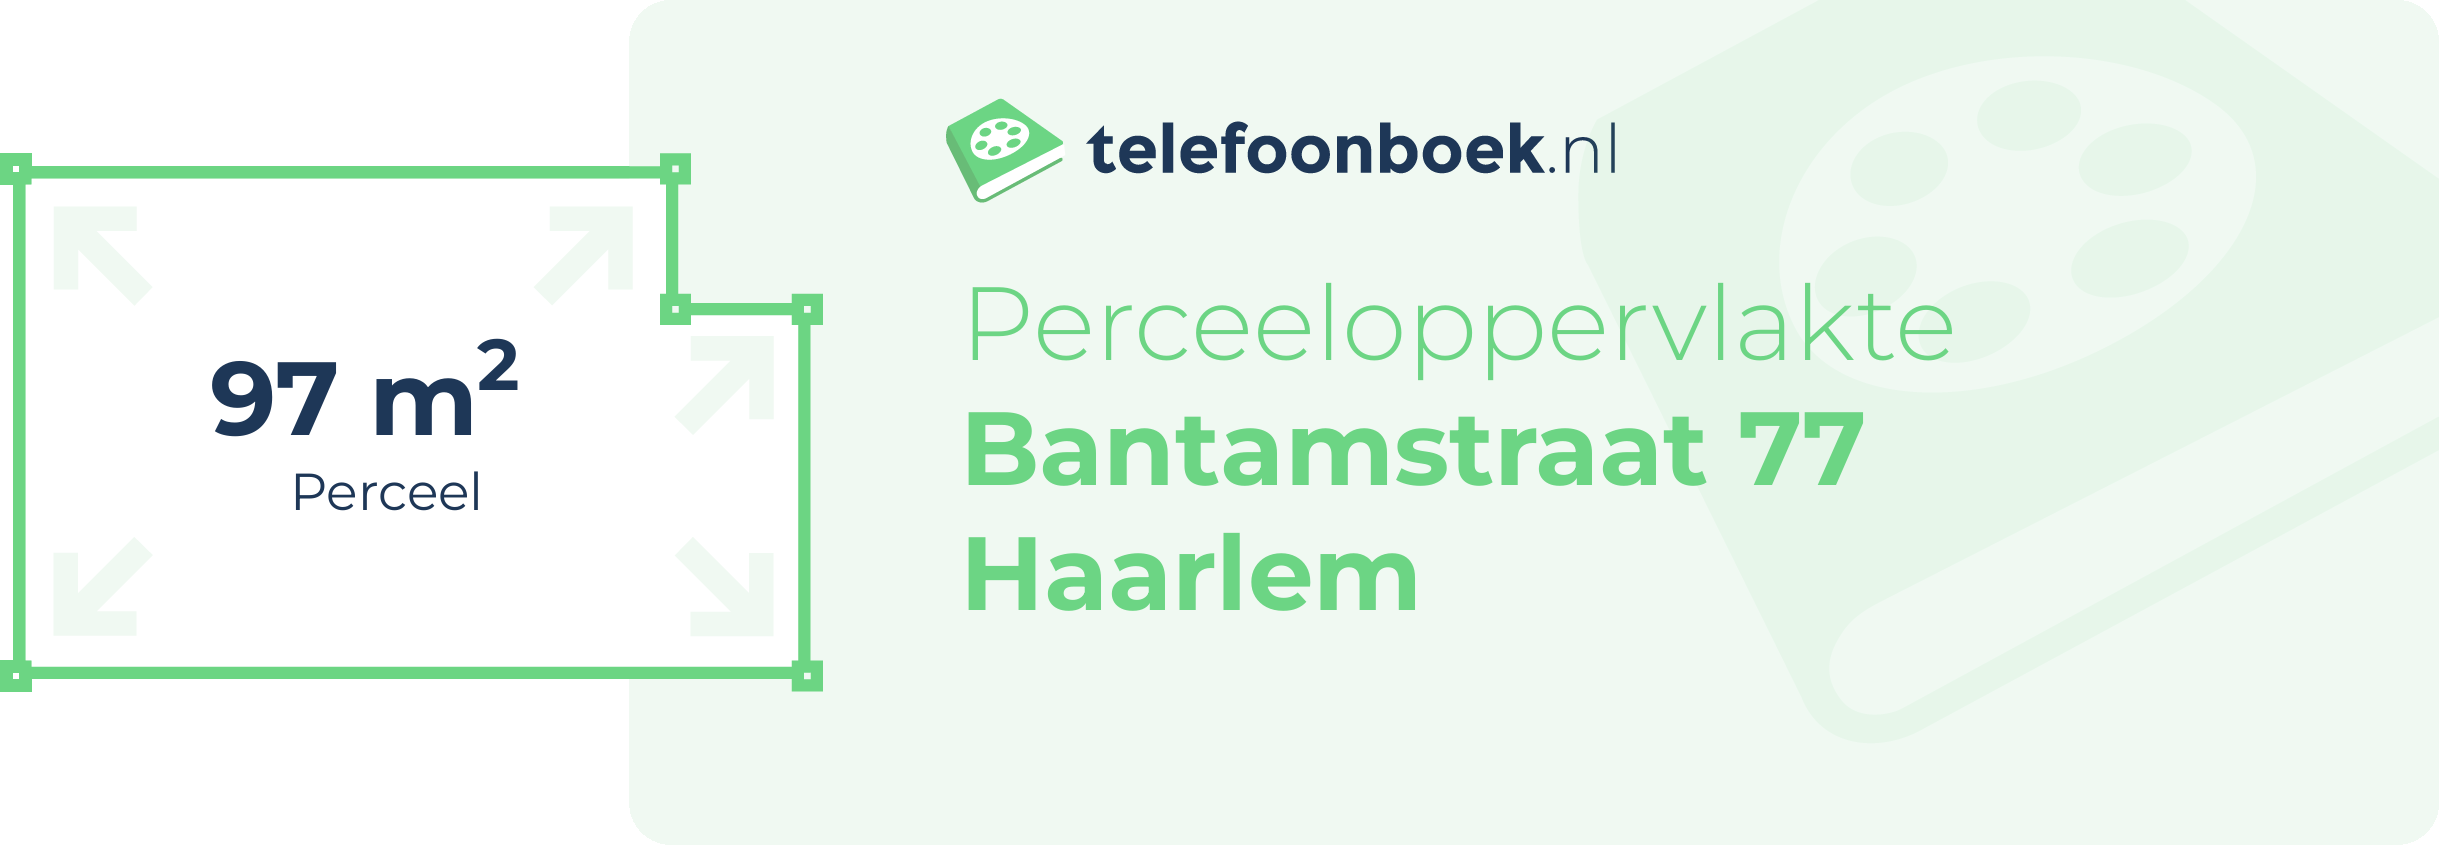 Perceeloppervlakte Bantamstraat 77 Haarlem